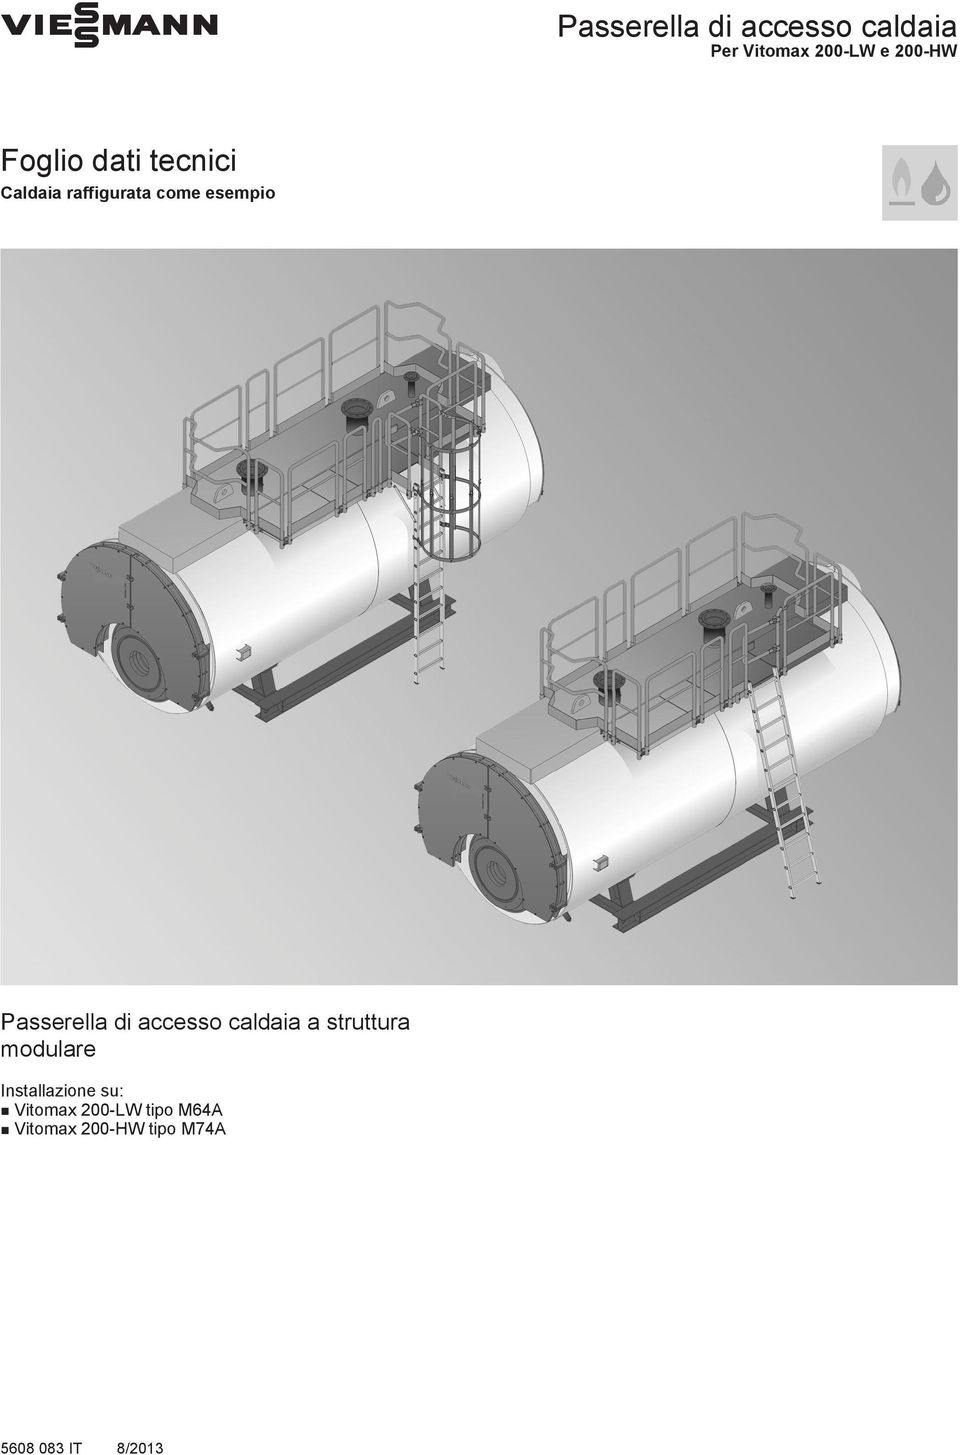 Passerella di accesso caldaia a struttura modulare